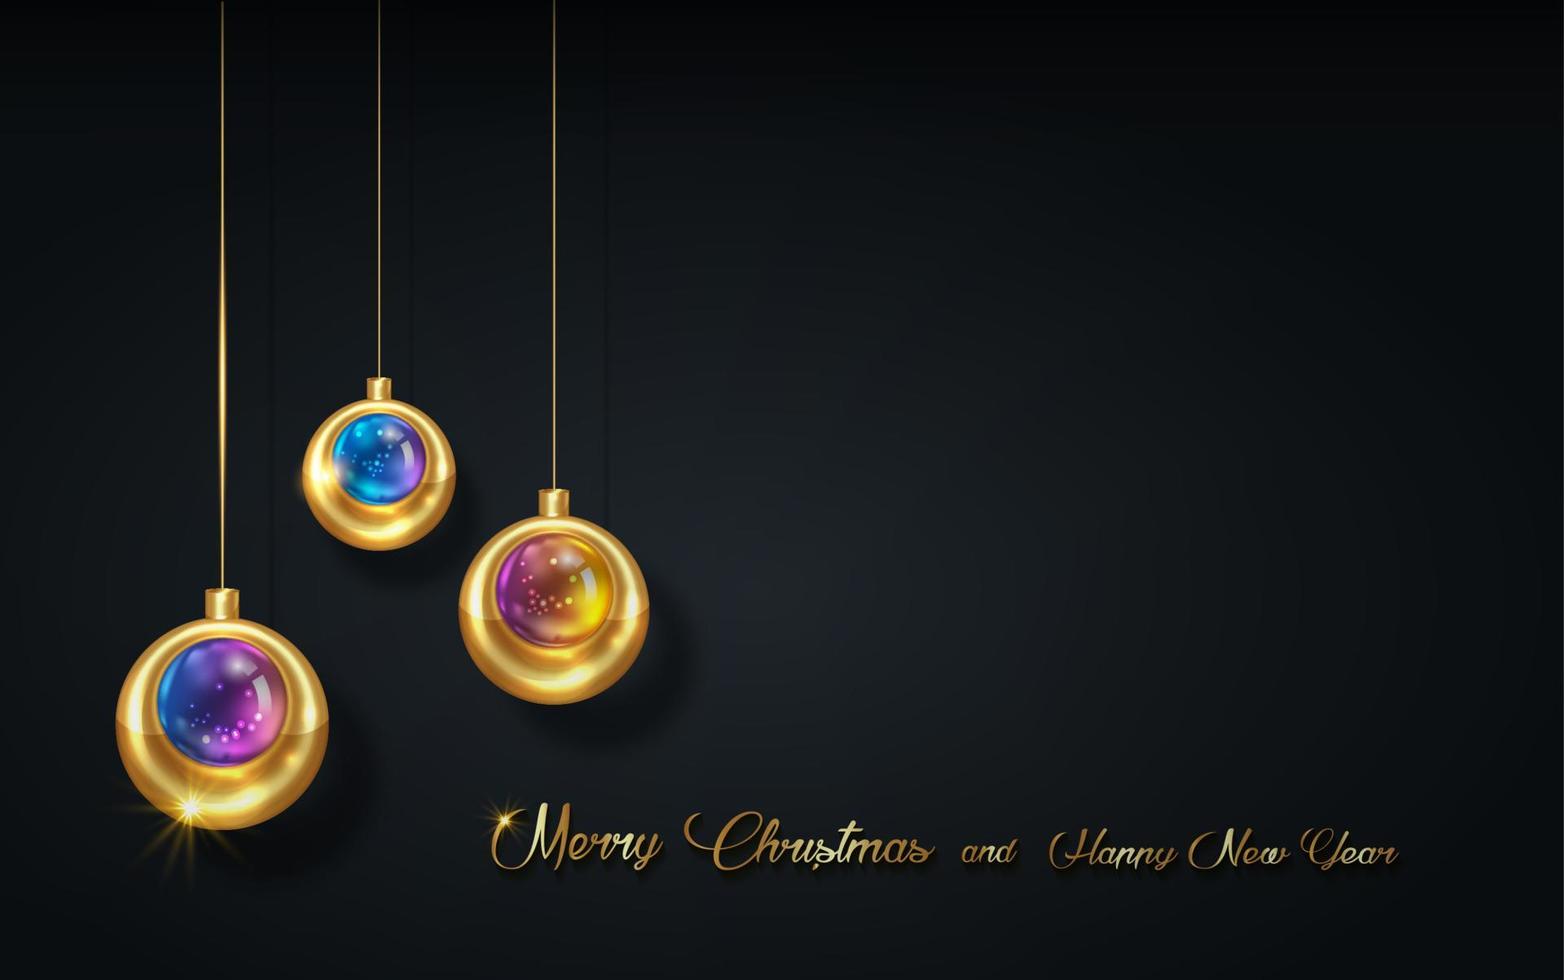 banner de vacaciones de lujo de navidad con saludos de feliz navidad y feliz año nuevo escritos a mano en oro y bolas de navidad de color dorado, adorno de navidad de vidrio. ilustración vectorial aislada sobre fondo negro vector